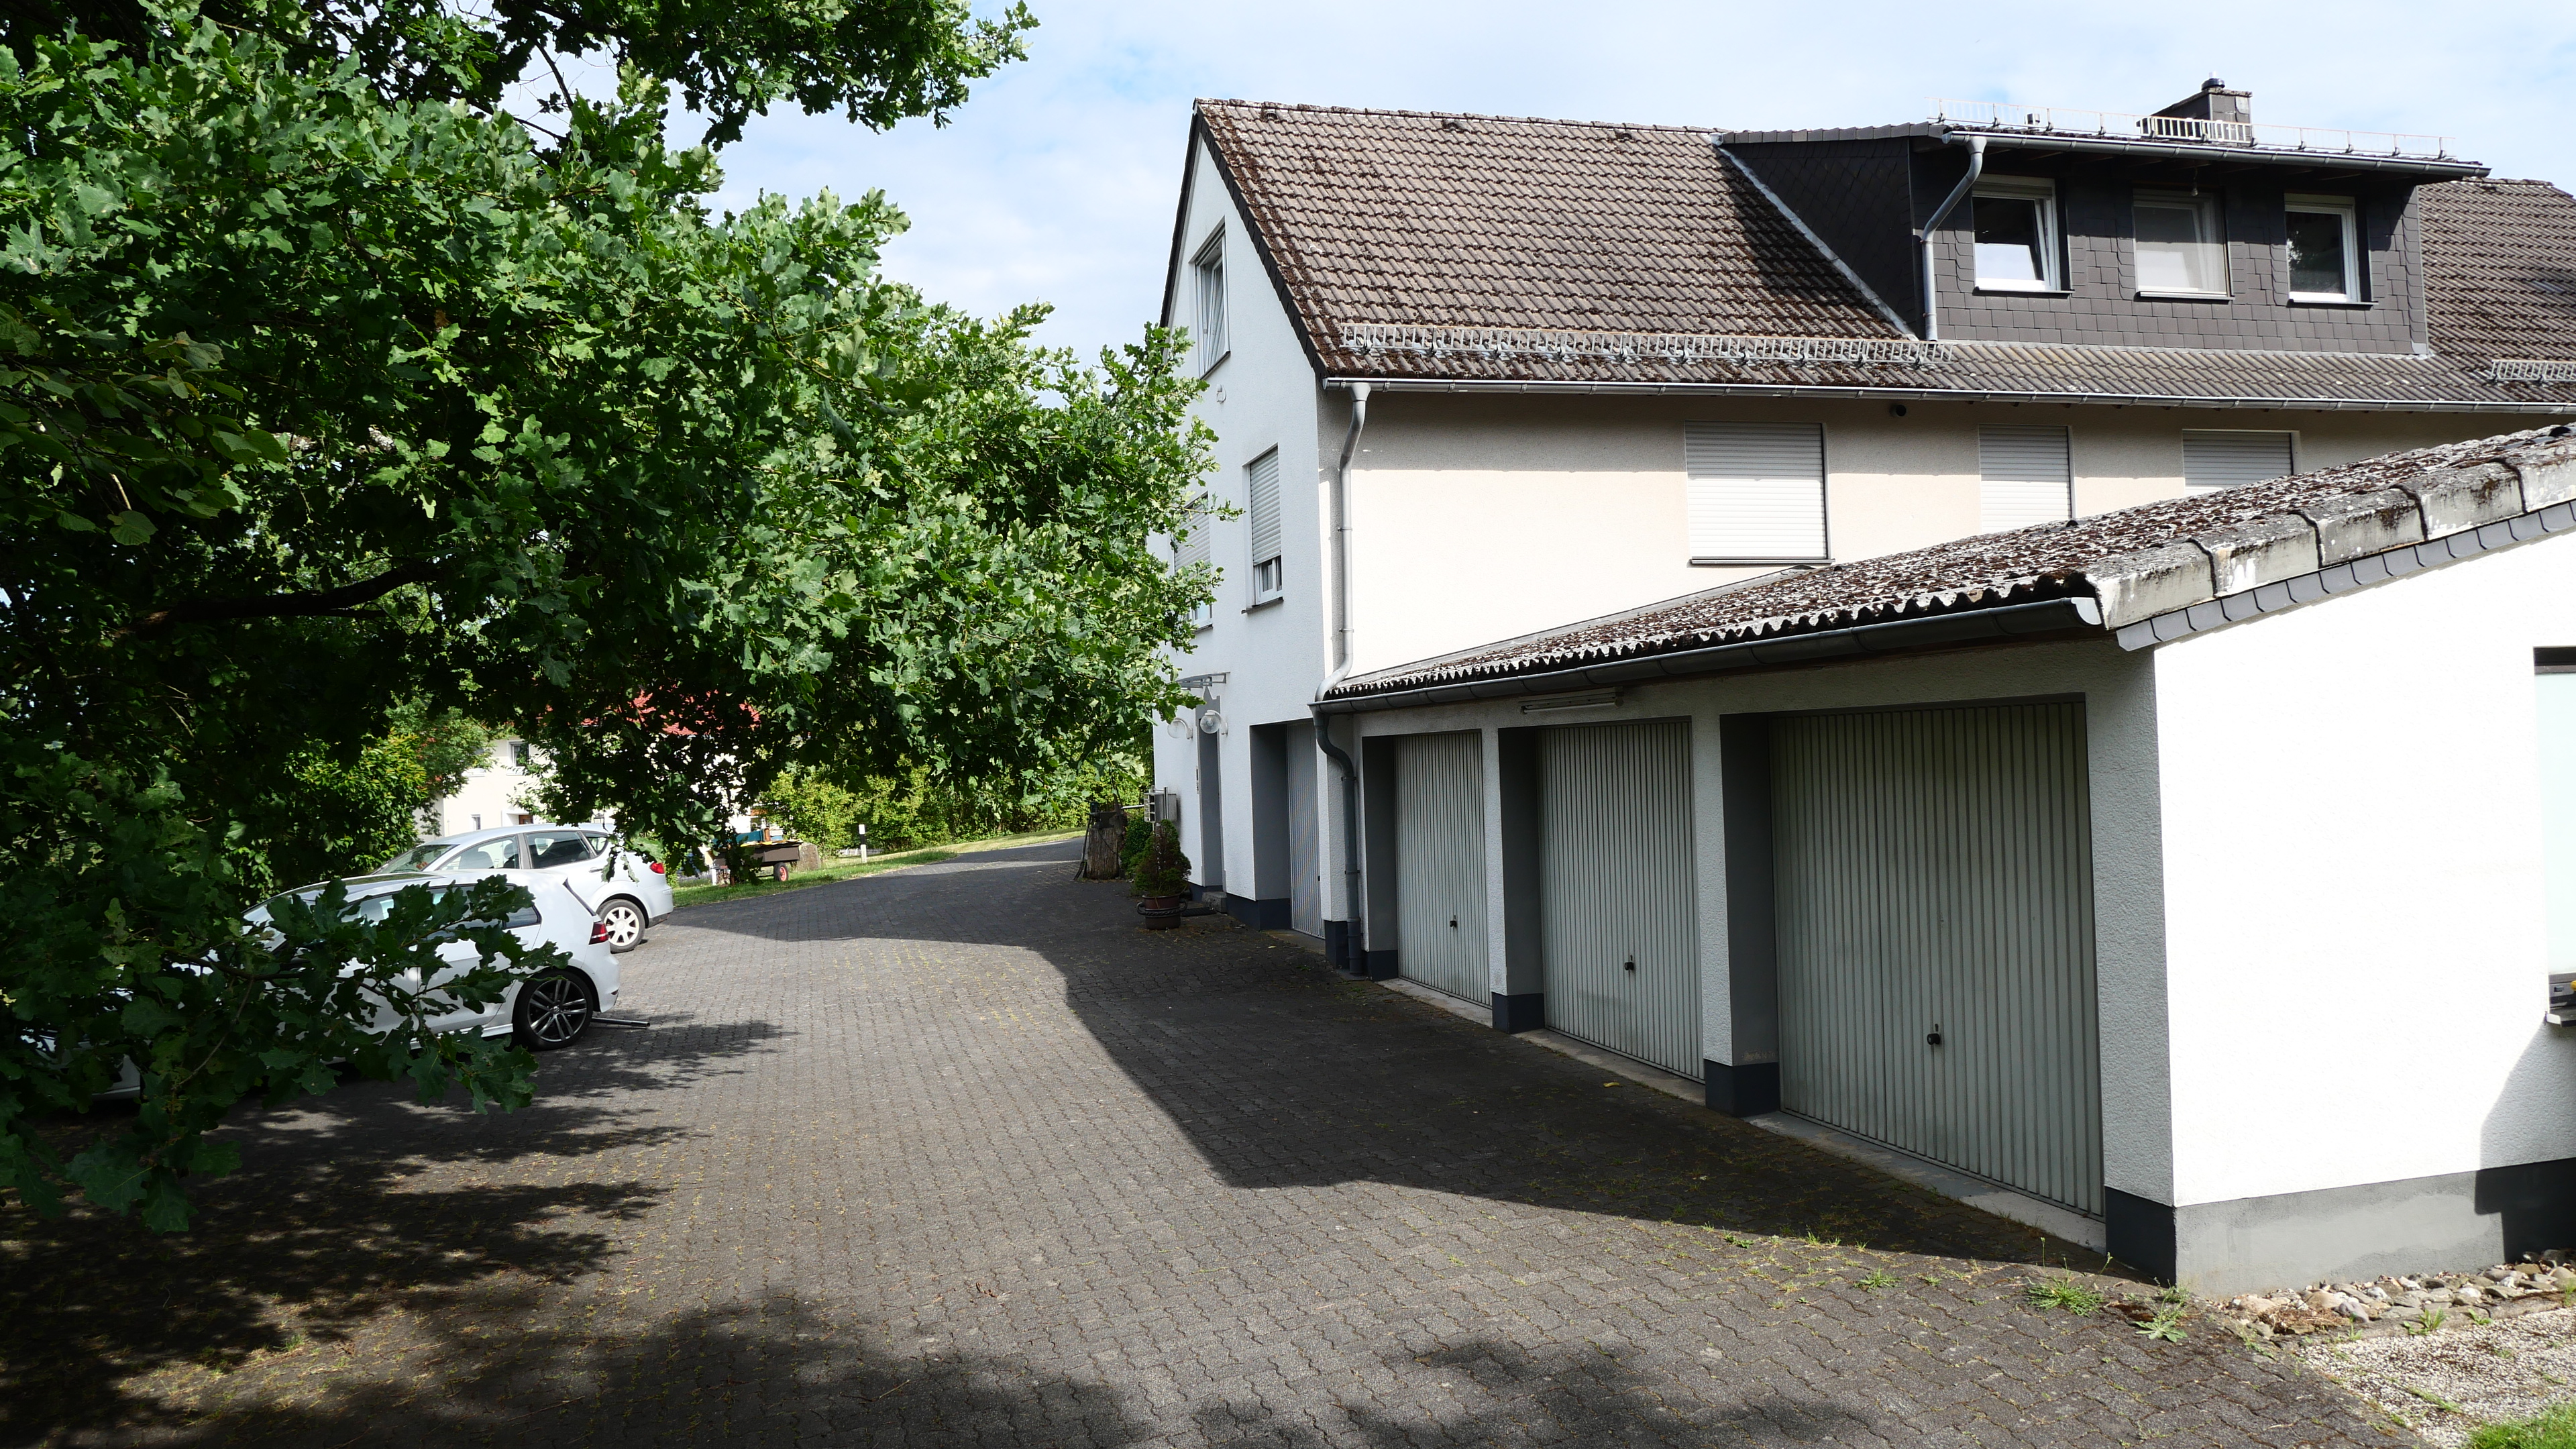 Reichshof-Wildbergerhütte: Wohnhaus mit 3 Wohneinheiten und 4 Garagen, ...angebautem Garagengebäude